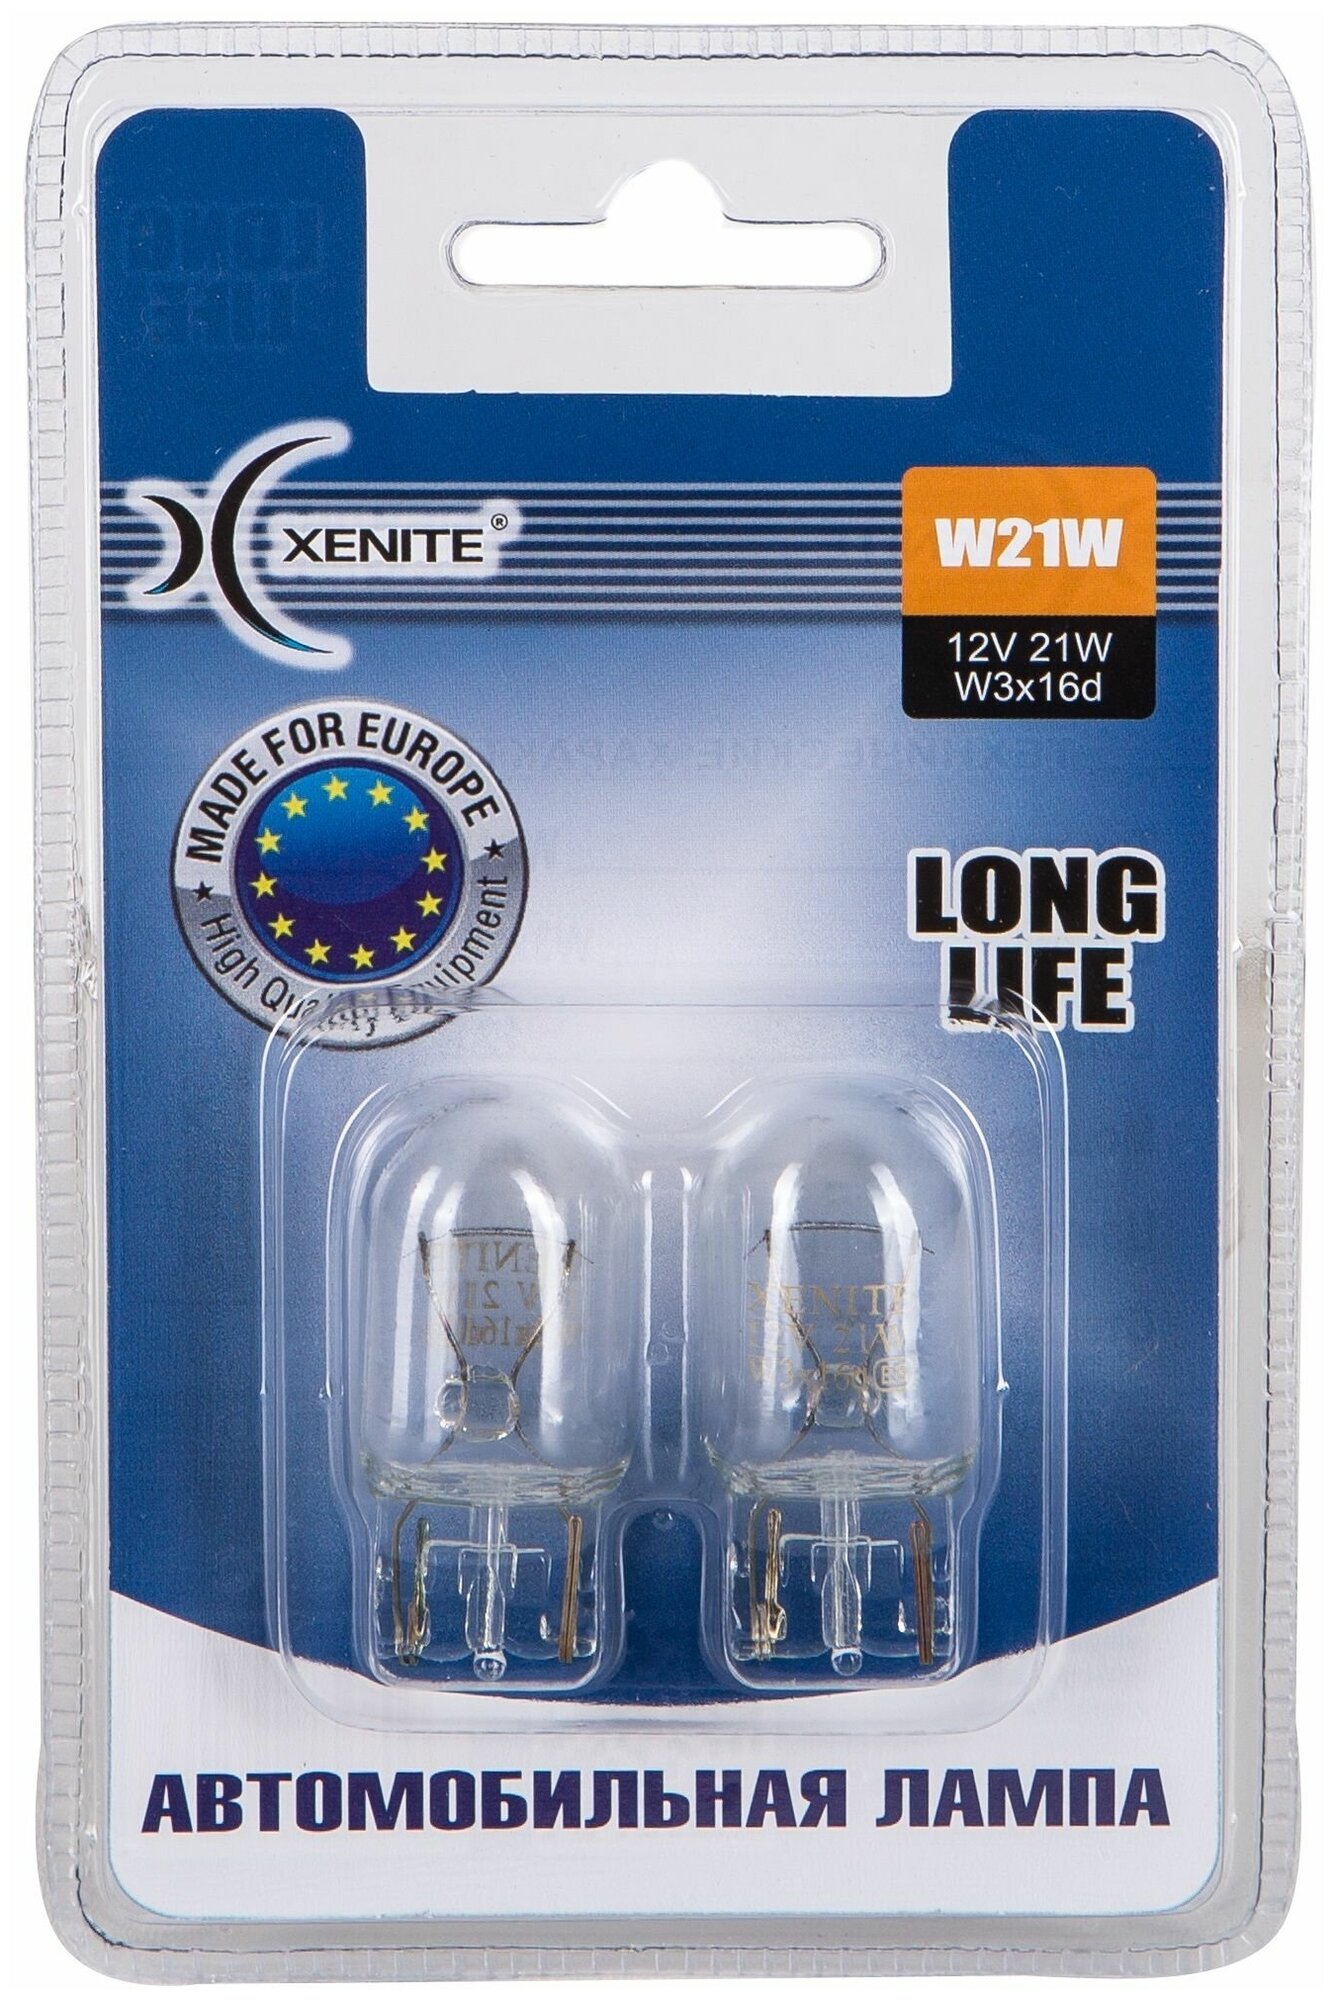 Лампа автомобильная накаливания Xenite Long Life 1007115 W21W 21W W3x16d